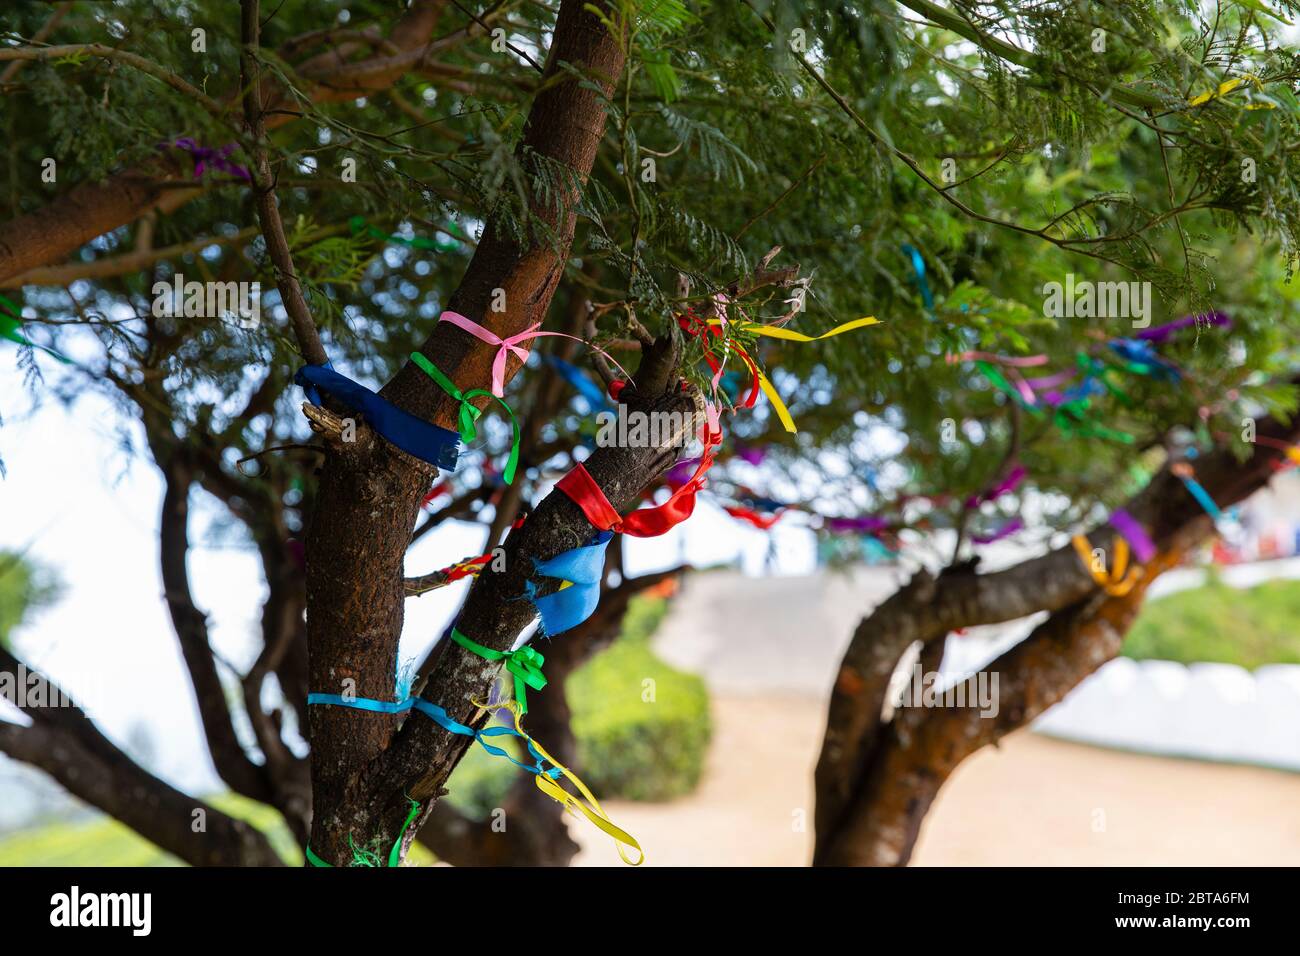 Rubans attachés aux branches d'un arbre, signifiant les souhaits et les prières des gens. Banque D'Images